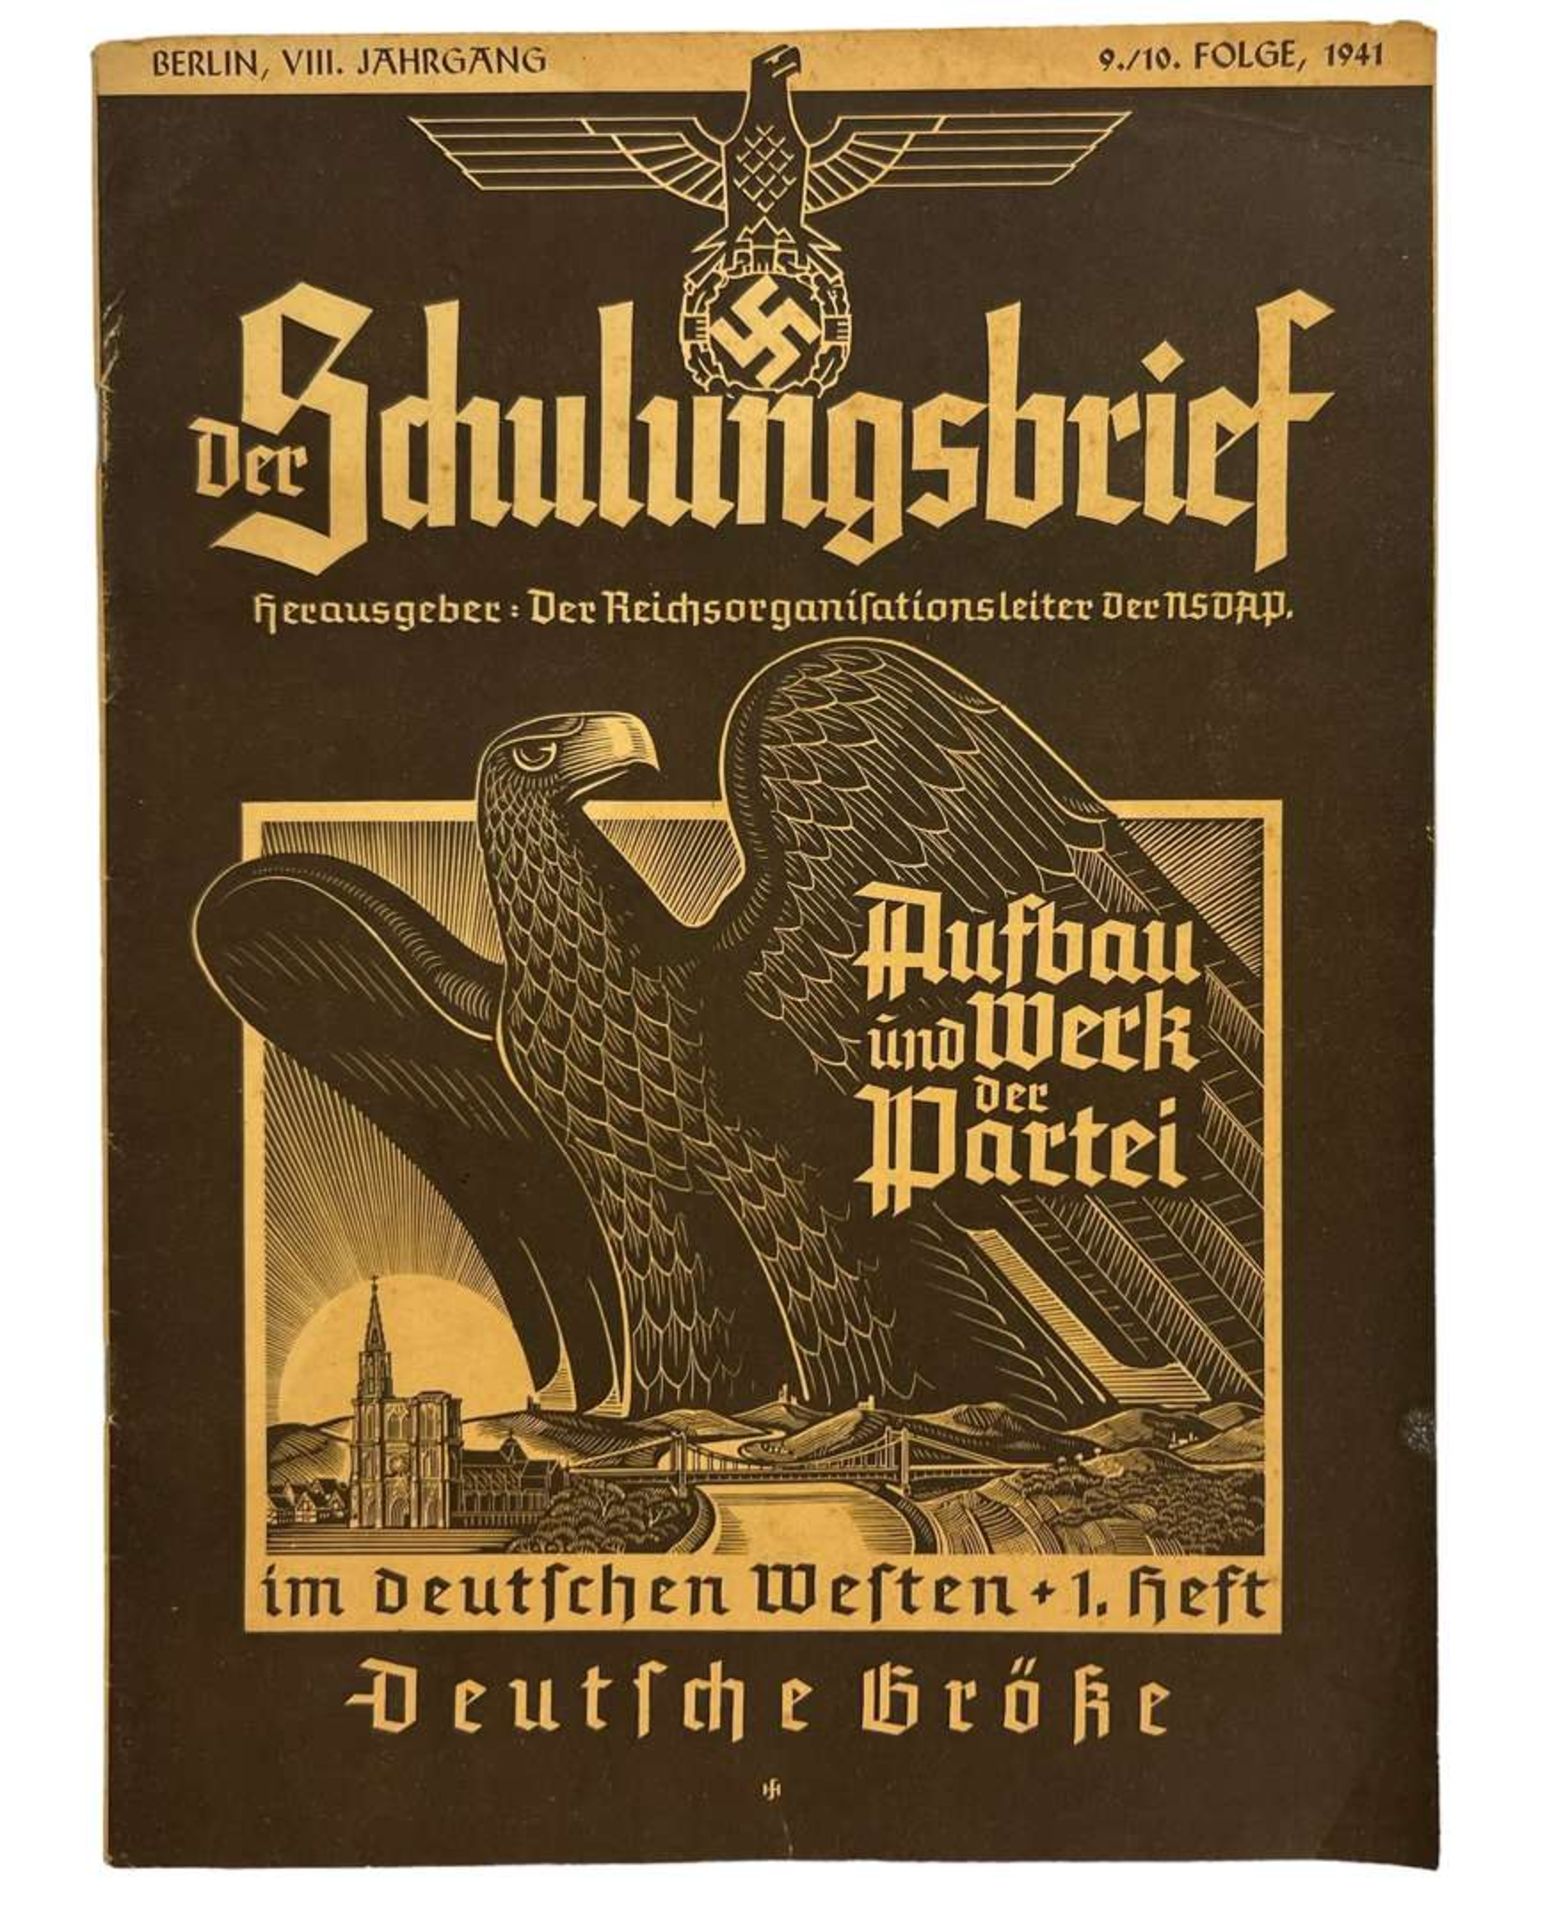 WW2 German NSDAP Newspaper "Der Schulungsbrief" 1941